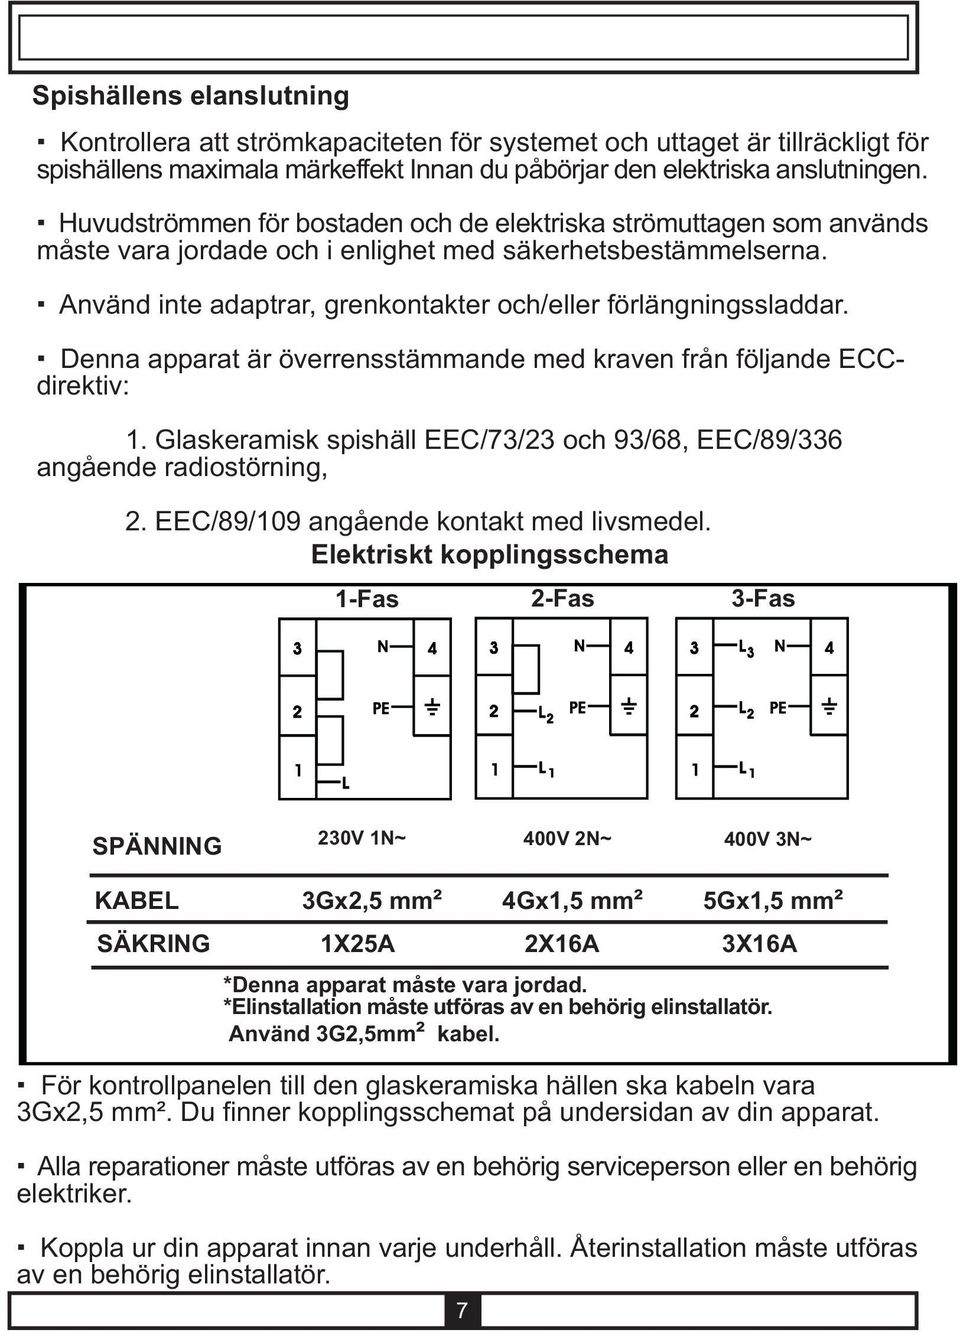 Denna apparat är överrensstämmande med kraven från följande ECCdirektiv: 1. Glaskeramisk spishäll EEC/73/23 och 93/68, EEC/89/336 angående radiostörning, 2. EEC/89/109 angående kontakt med livsmedel.